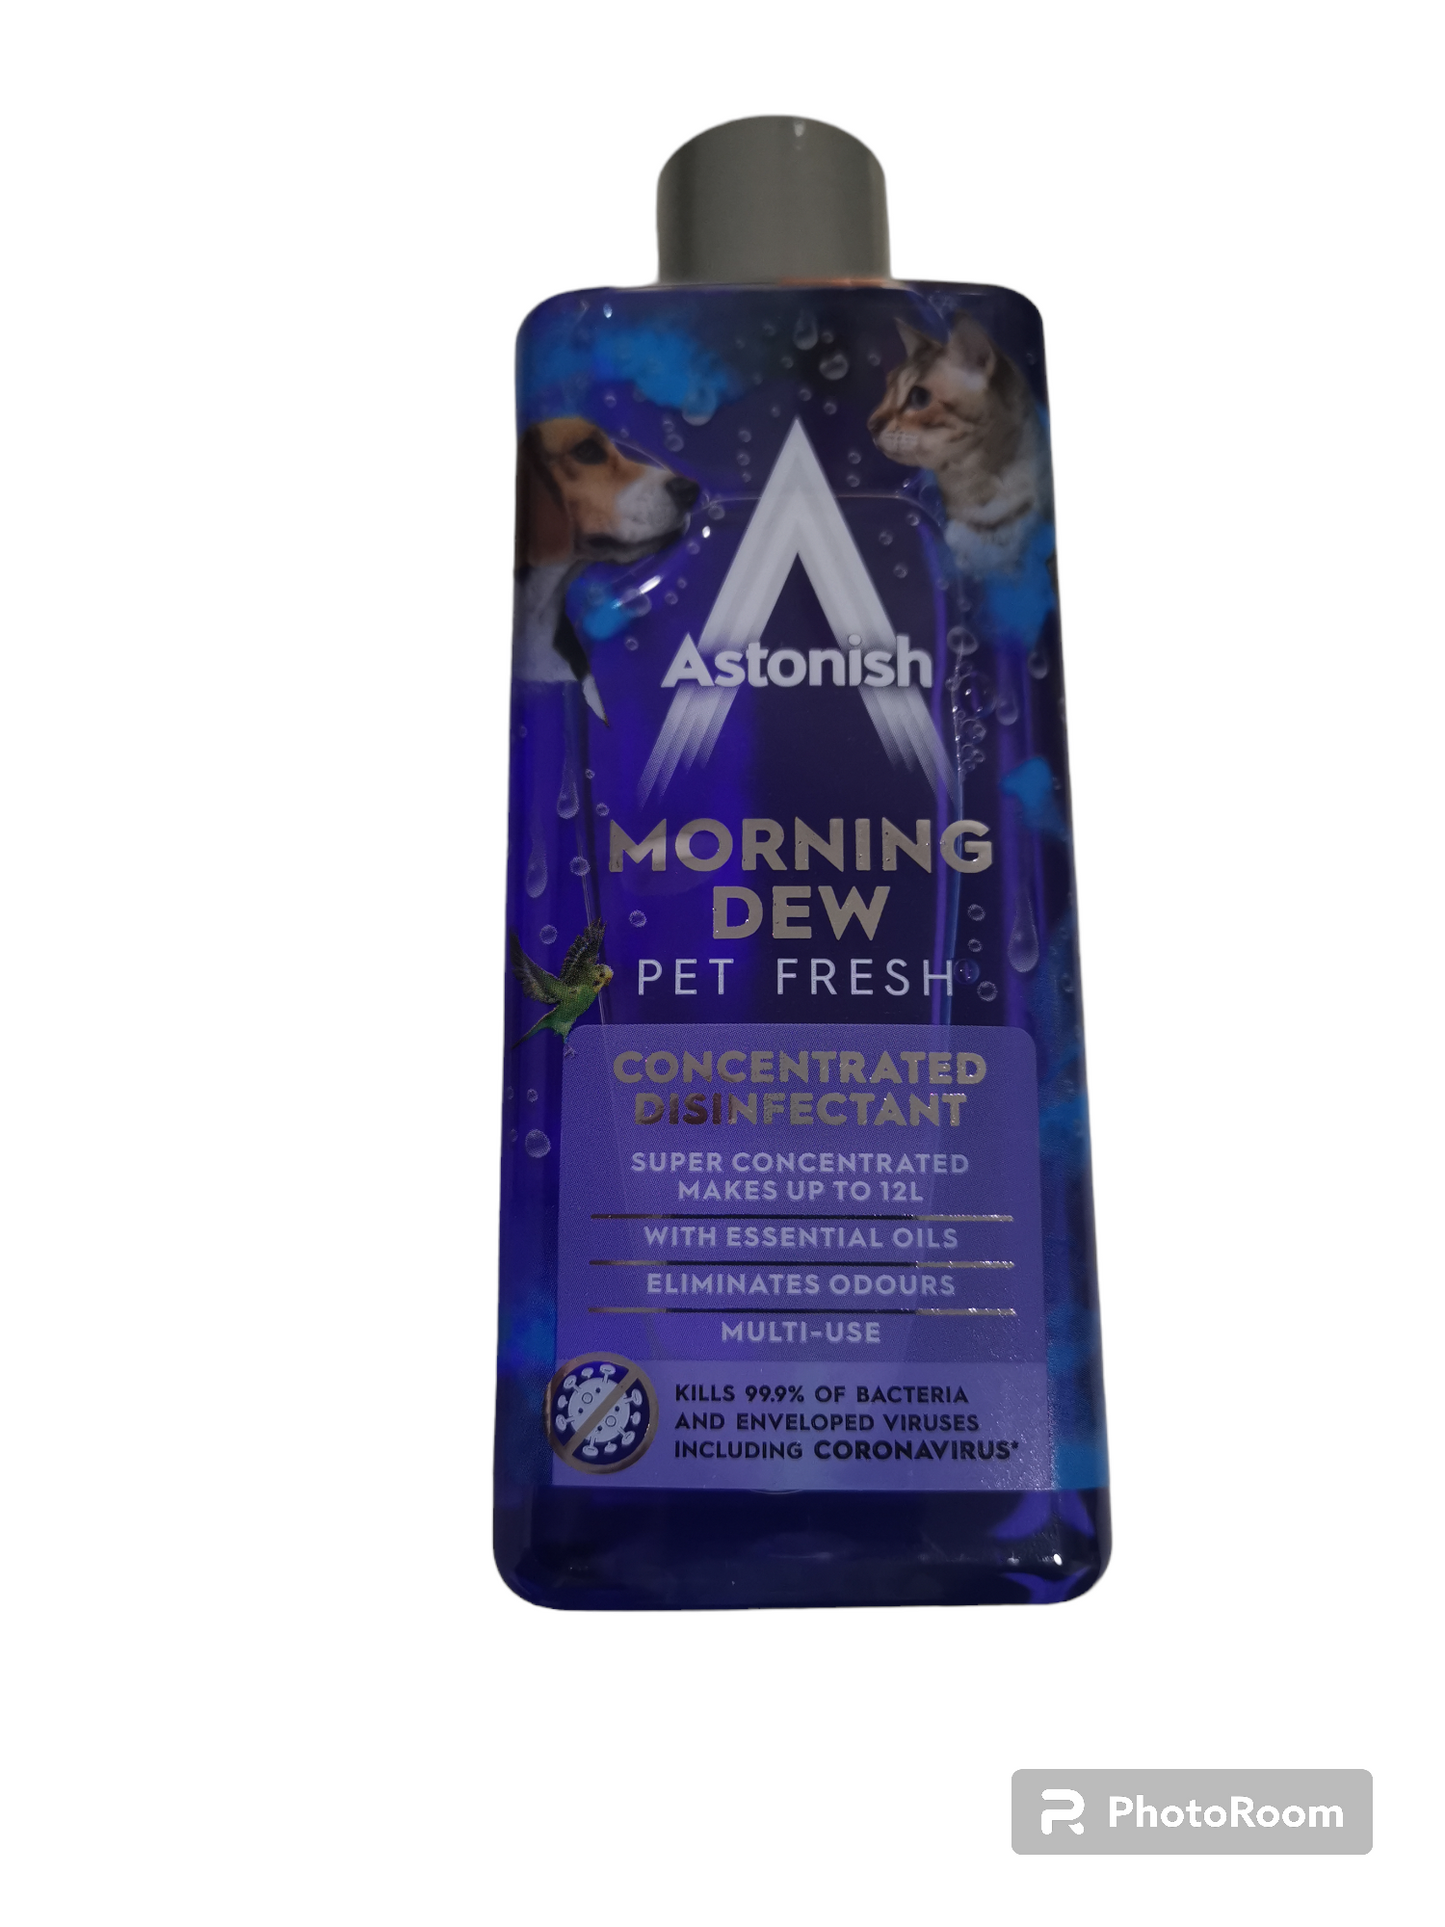 Astonish morning dew pet fresh